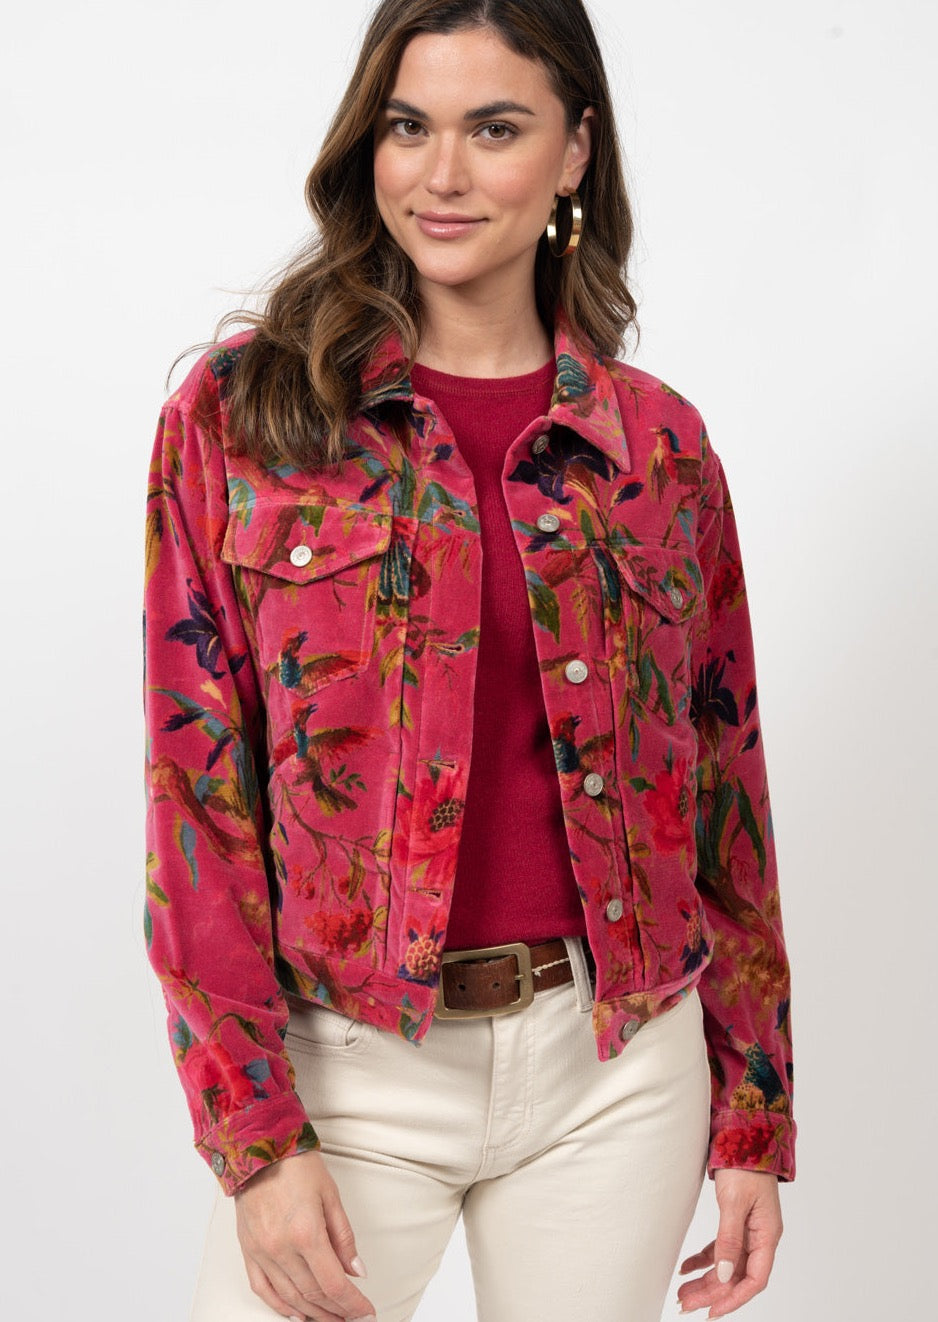 Ivy Jane Robin Printed Jacket